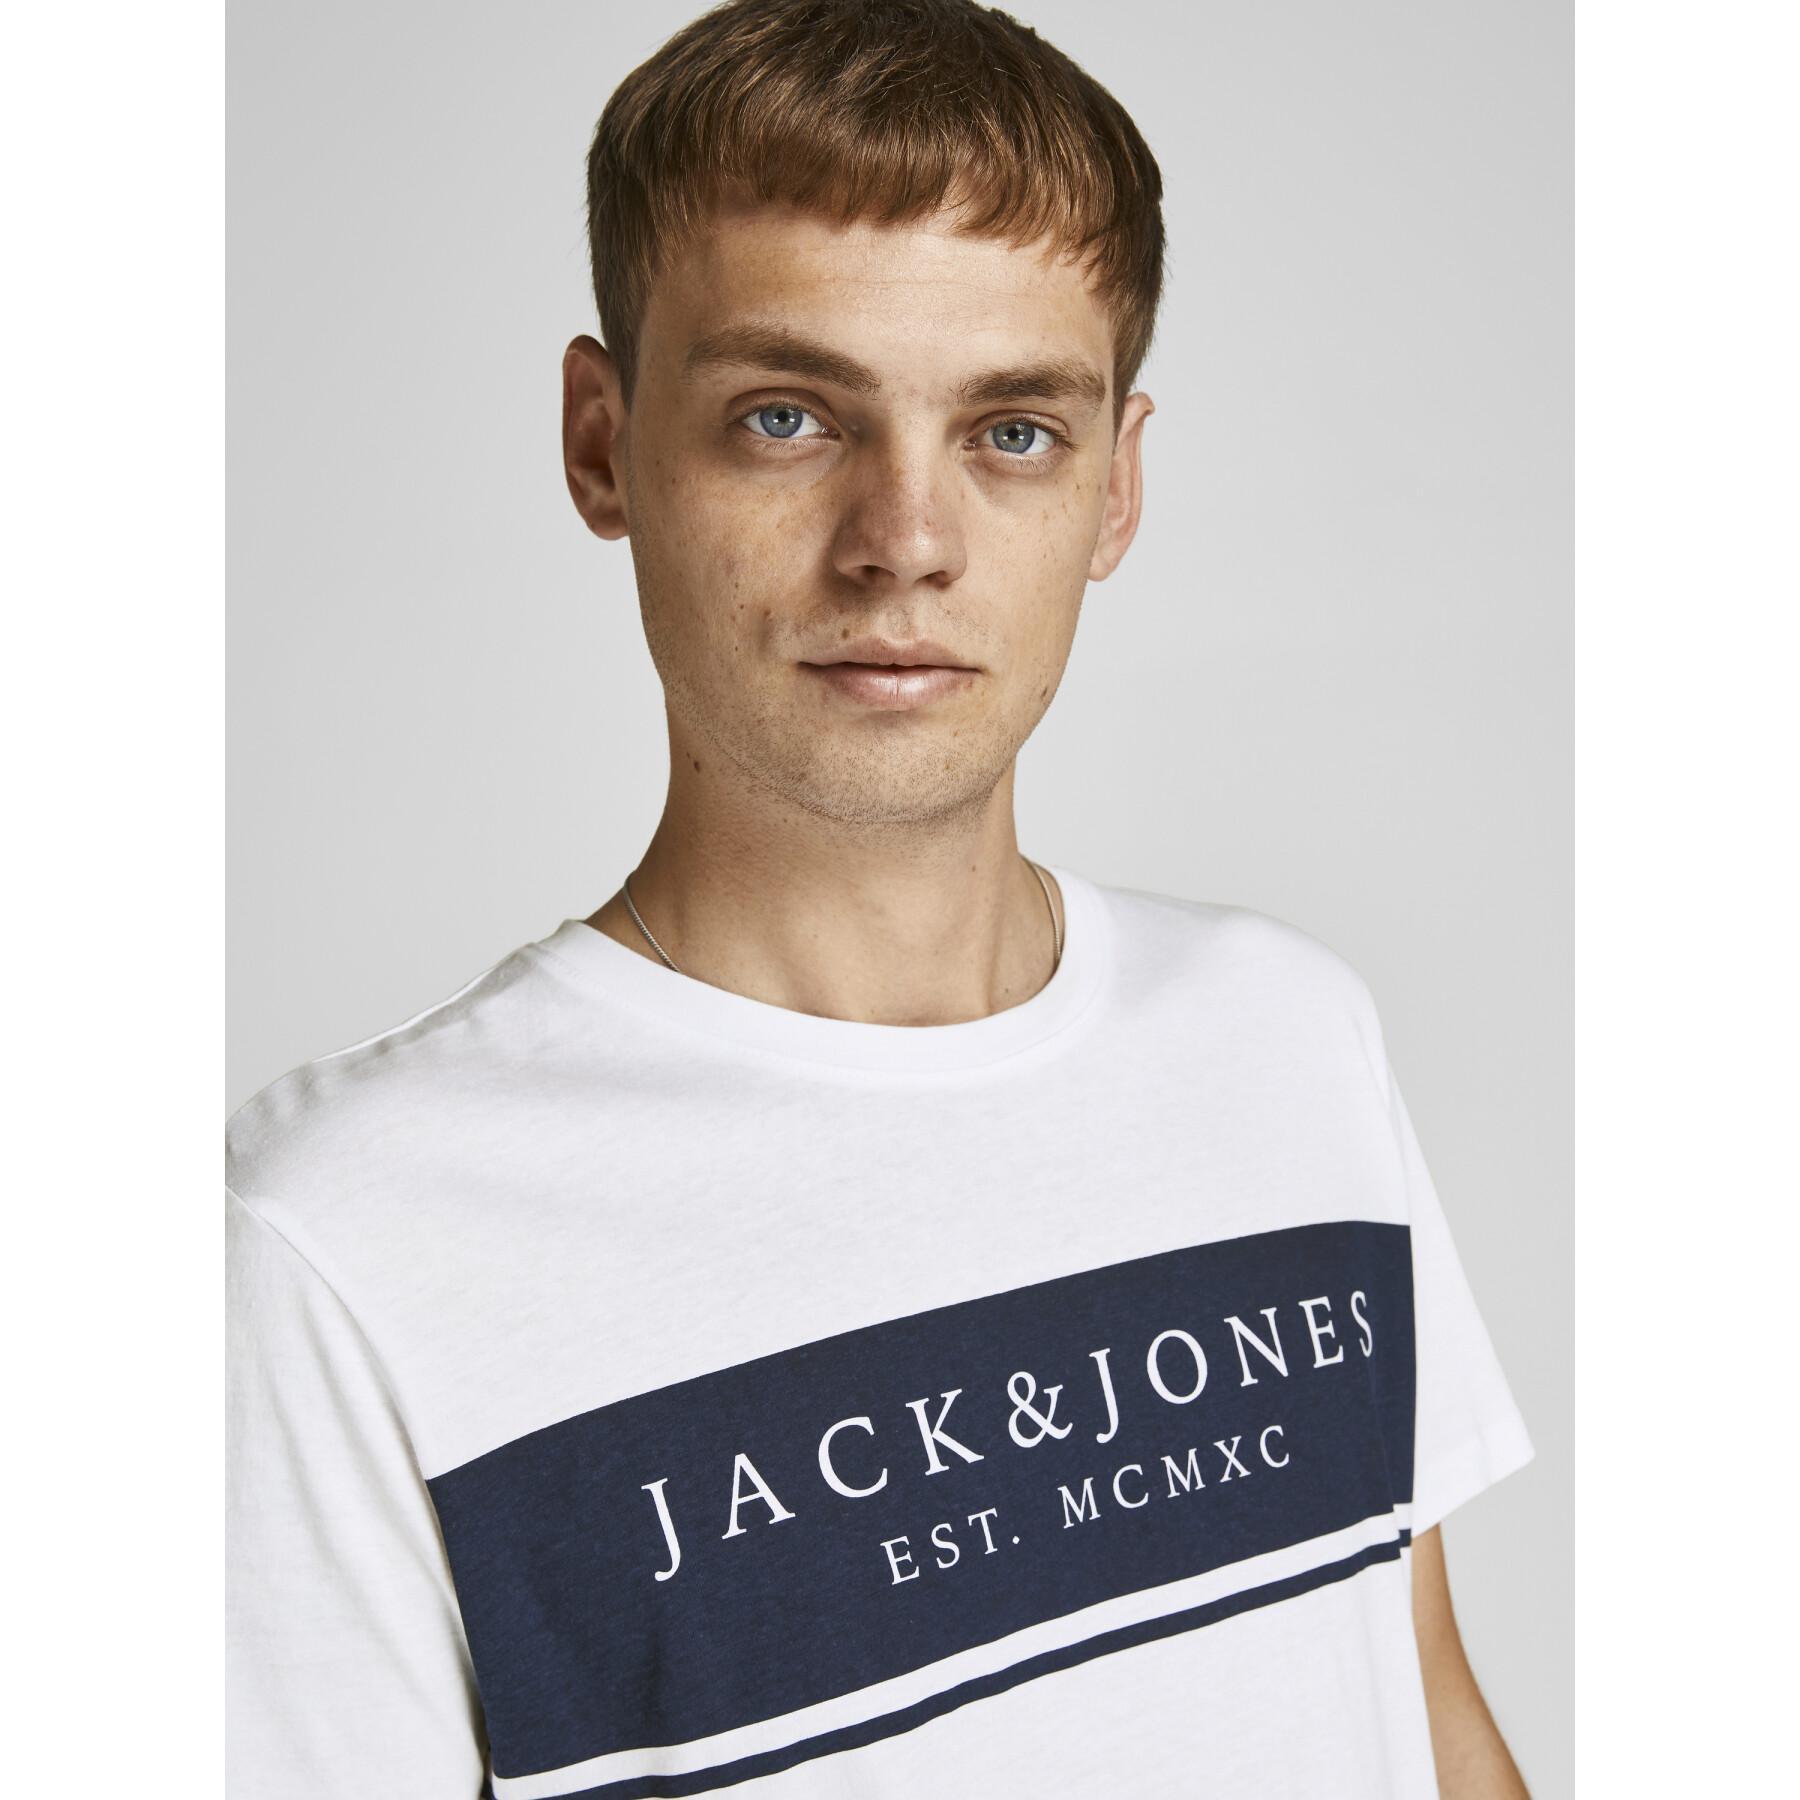 T-shirt met korte mouwen Jack & Jones Jjriver